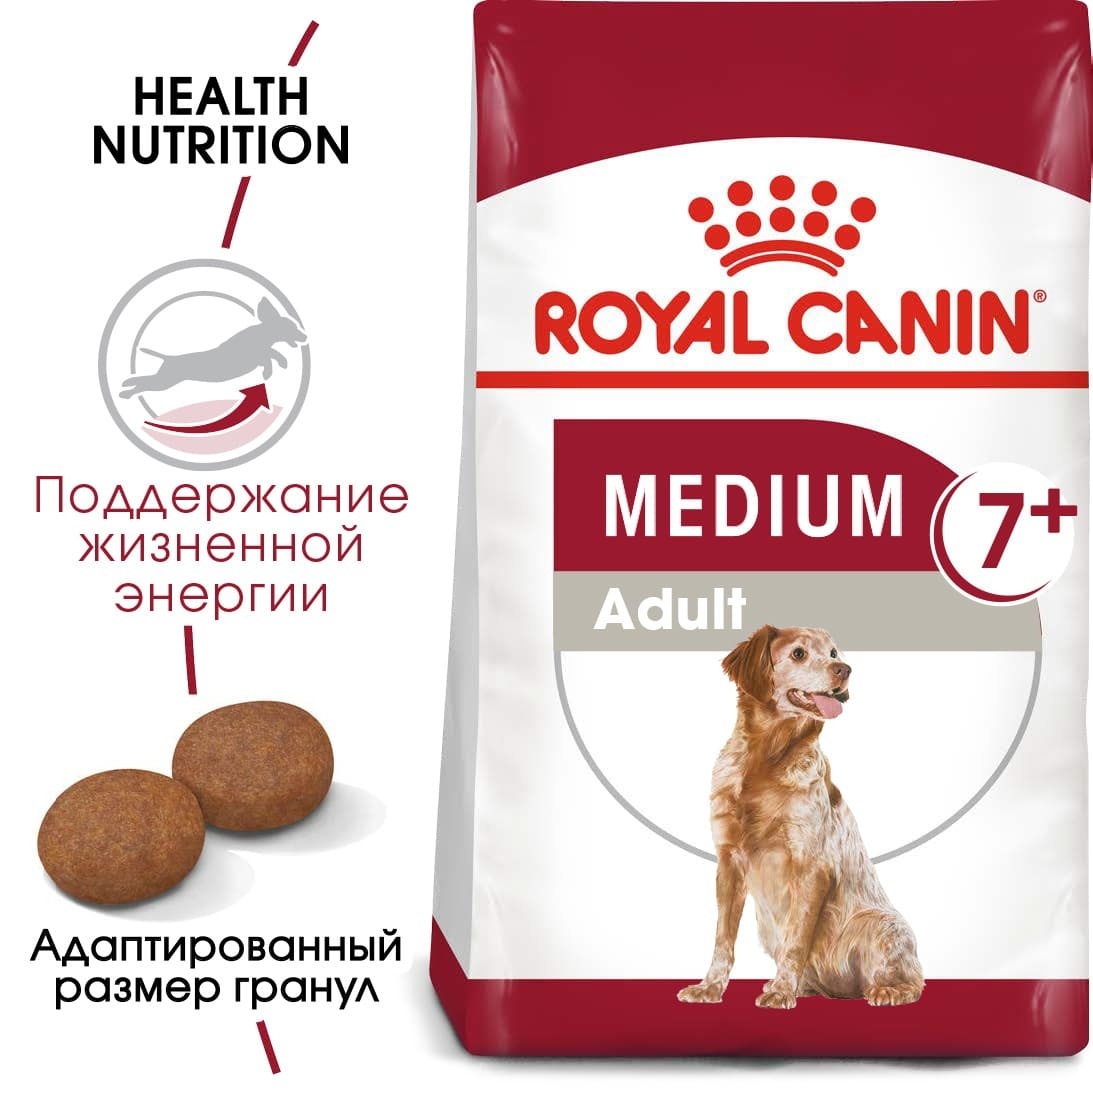 Корм Royal Canin корм для пожилых собак средних размеров: 11-25 кг, 7-10 лет (15 кг) 